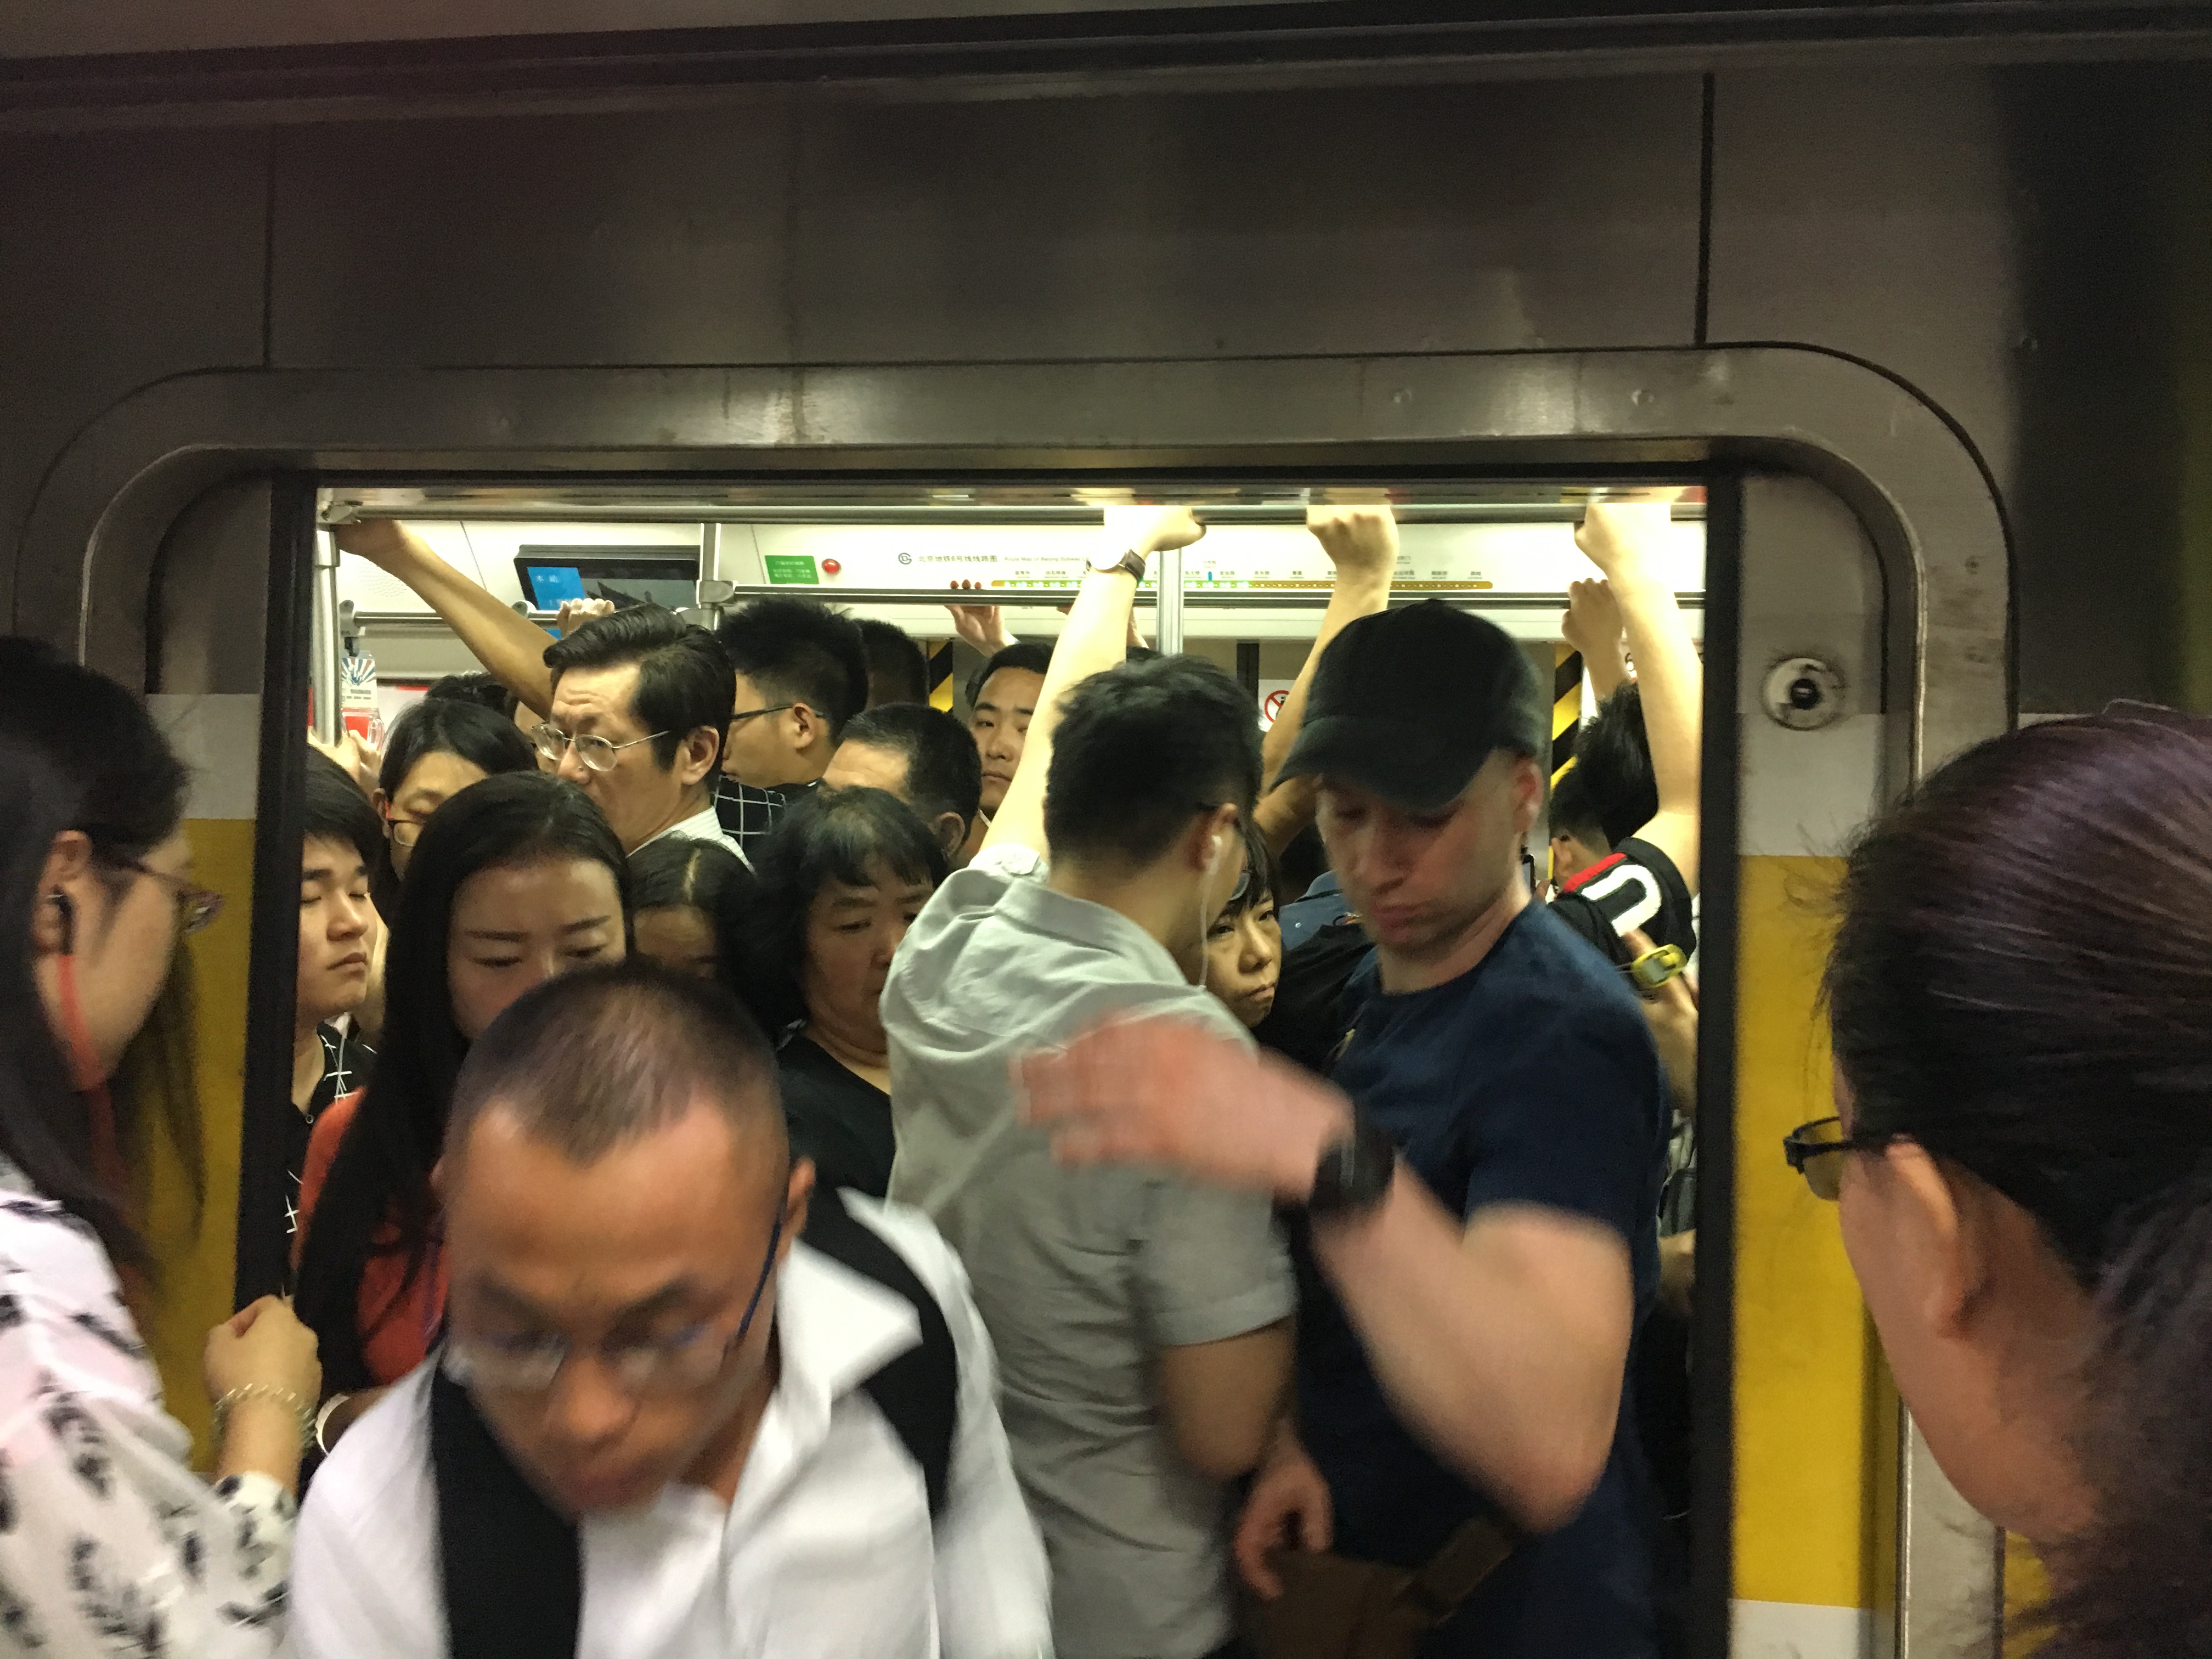 实拍伦敦地铁高峰期:原来比北京还挤!